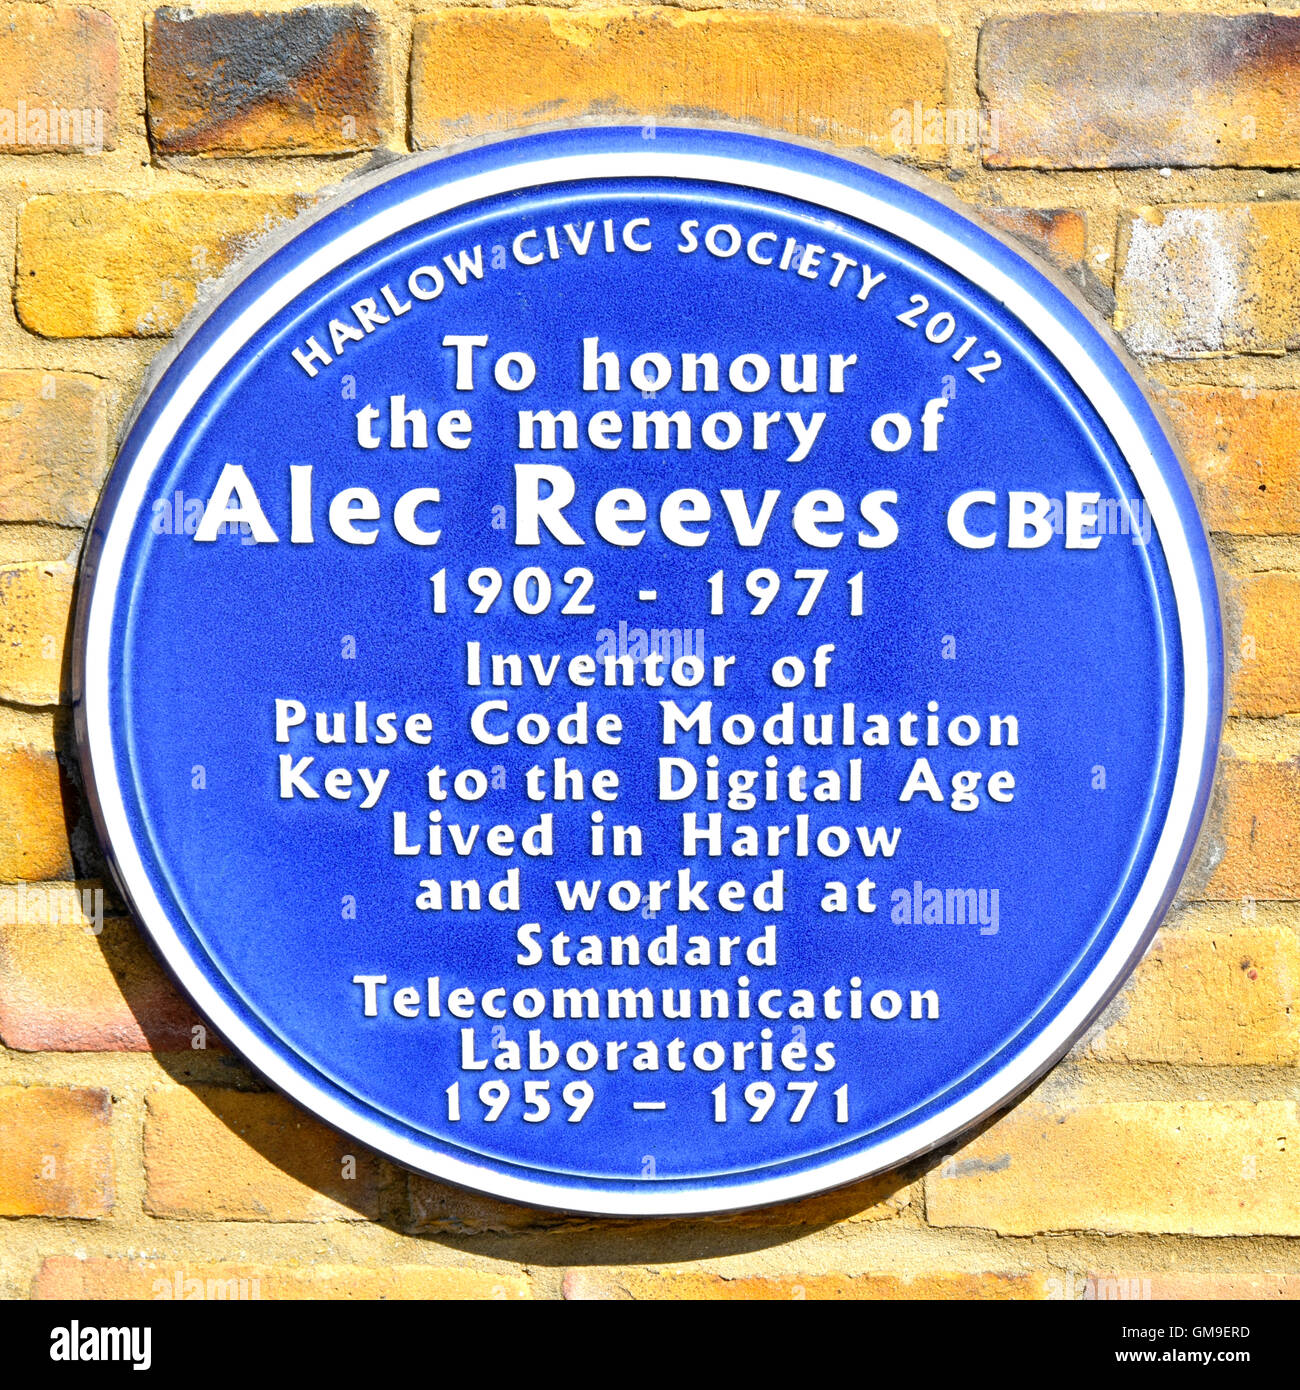 Blue Plaque sur Harlow Essex England UK Civic Centre de ville mur pour honorer la mémoire d'Alec Reeves CBE qui a inventé Pulse Code Modulation Banque D'Images